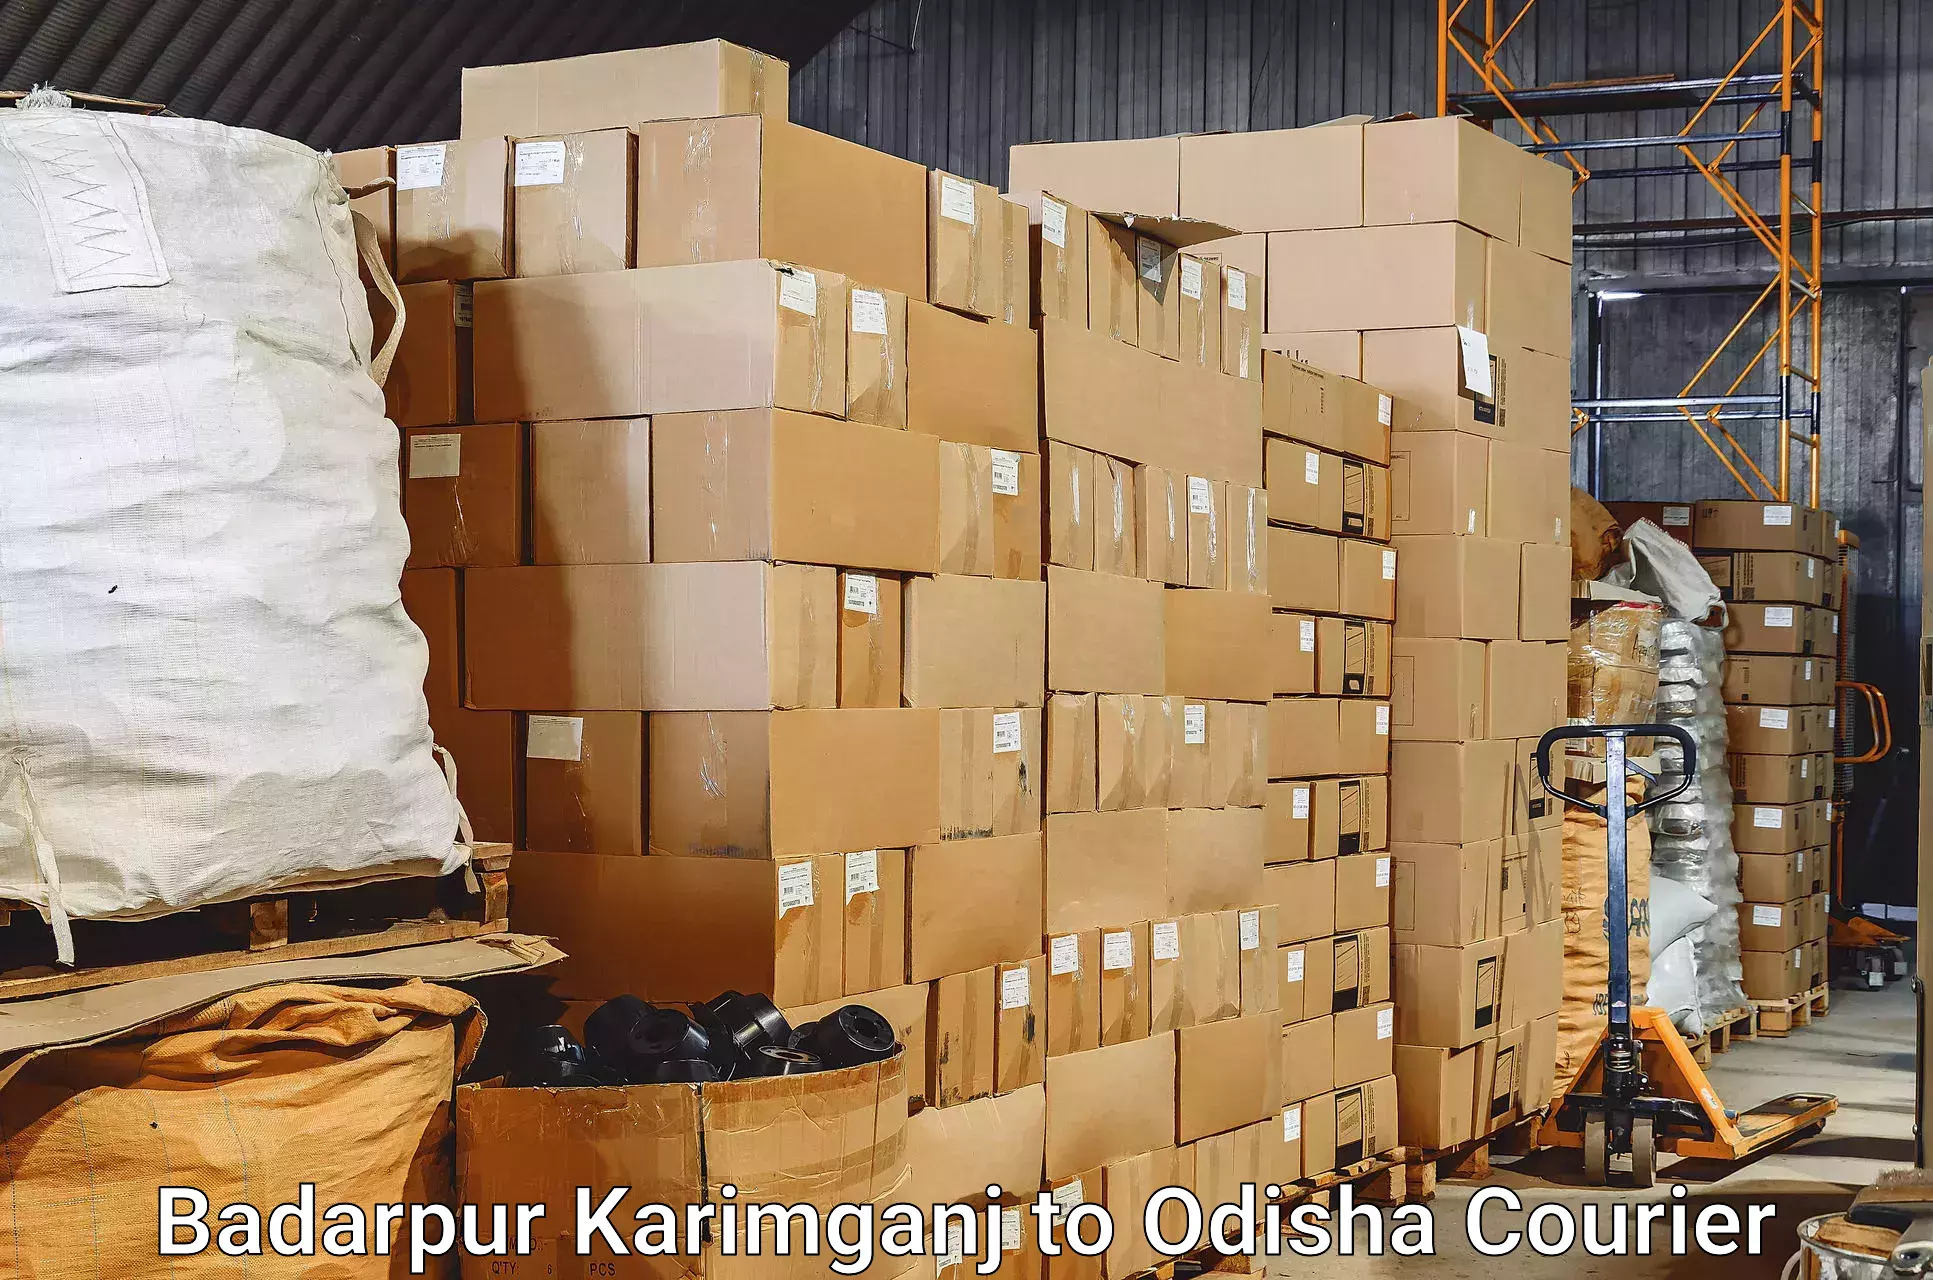 Baggage transport management Badarpur Karimganj to Bhanjanagar